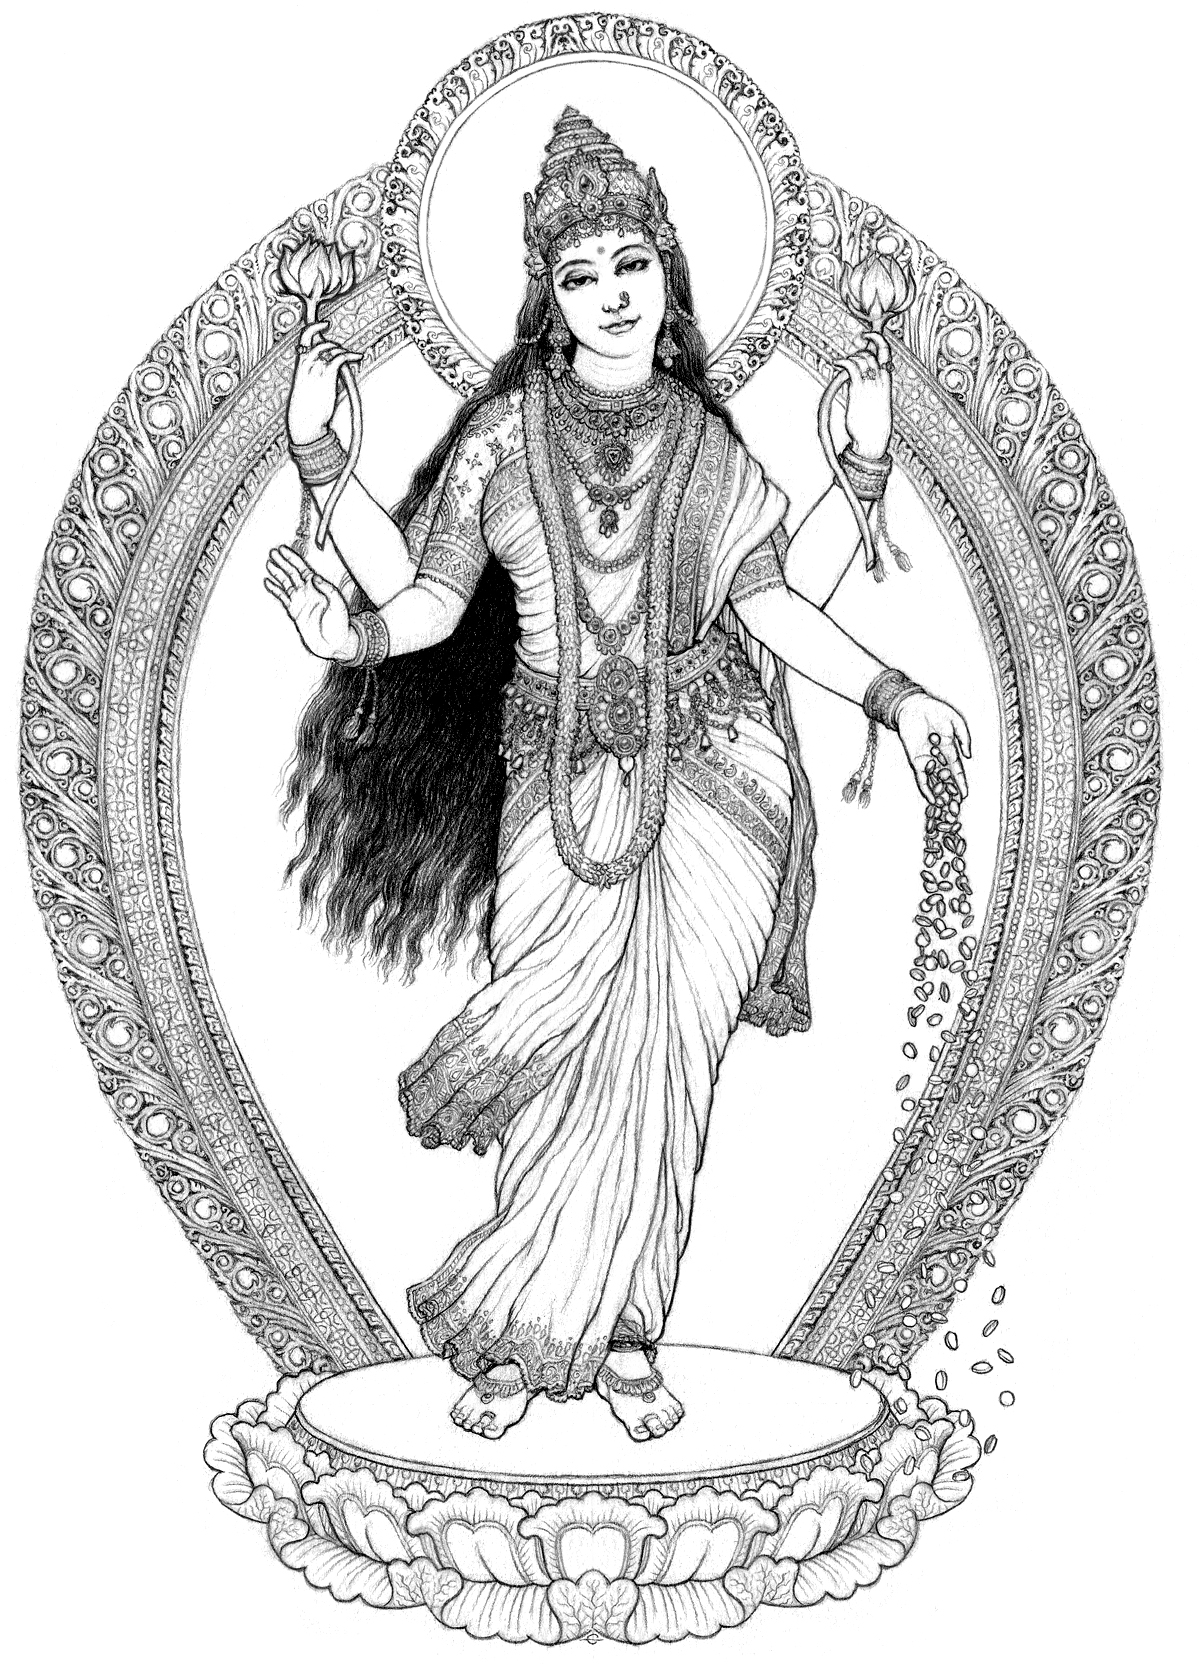 The Goddess Lakshmī Sally Kempton